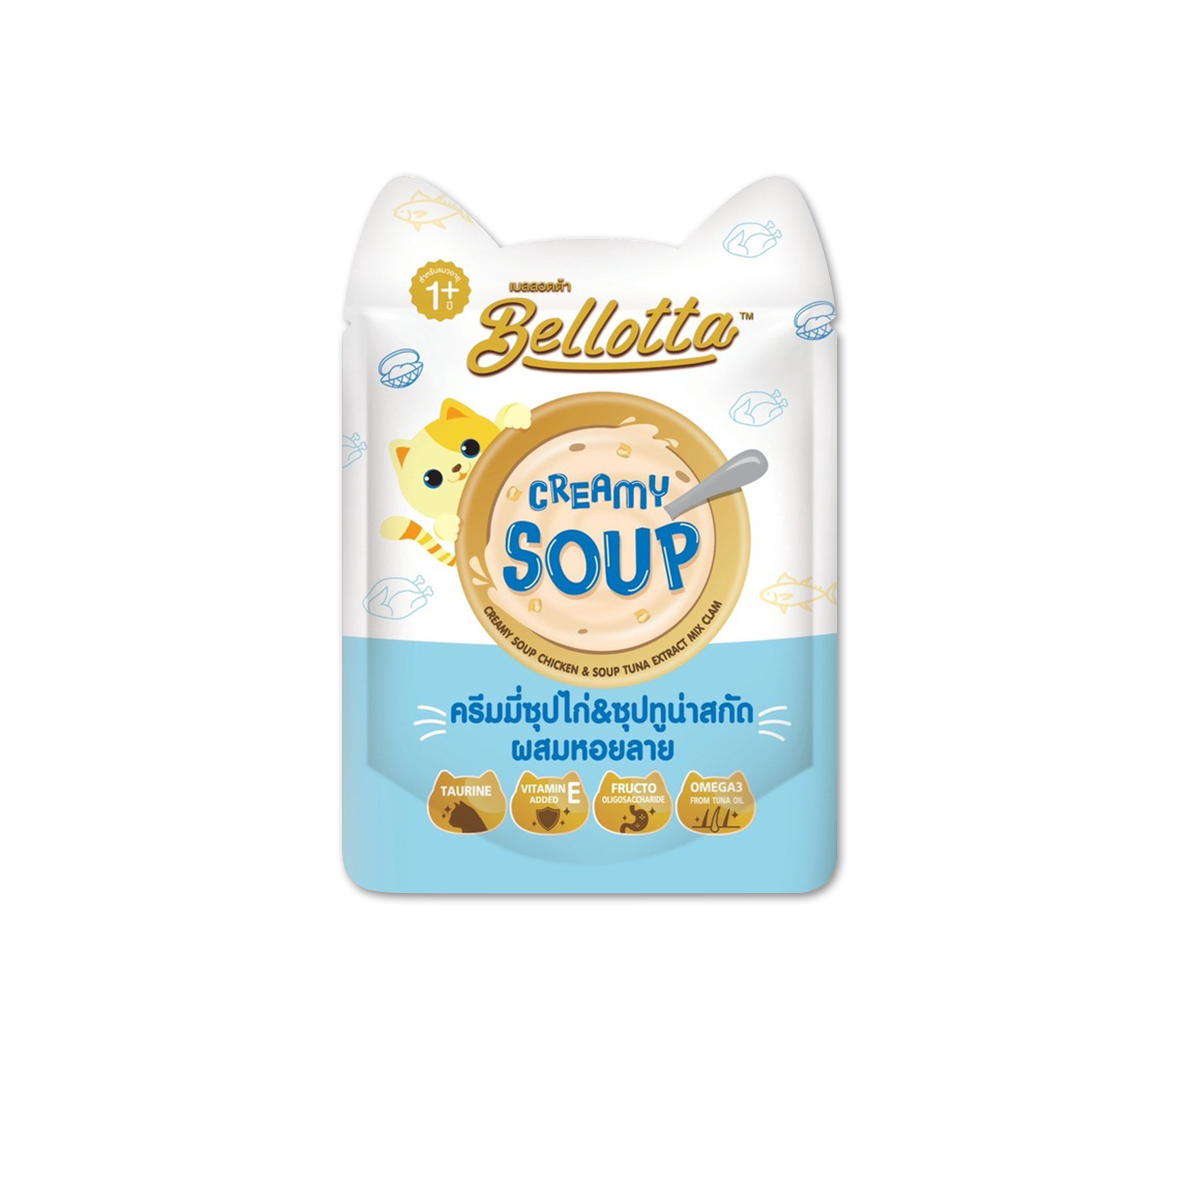 Bellotta Creamy Soup Creamy Chicken & Soup Tuna Extract mix Clam เบลลอตต้า ชนิดน้ำซุปซอง รสไก่&ซุปทูน่าสกัดผสมหอยลาย ขนาด 40 กรัม (12 ซอง)